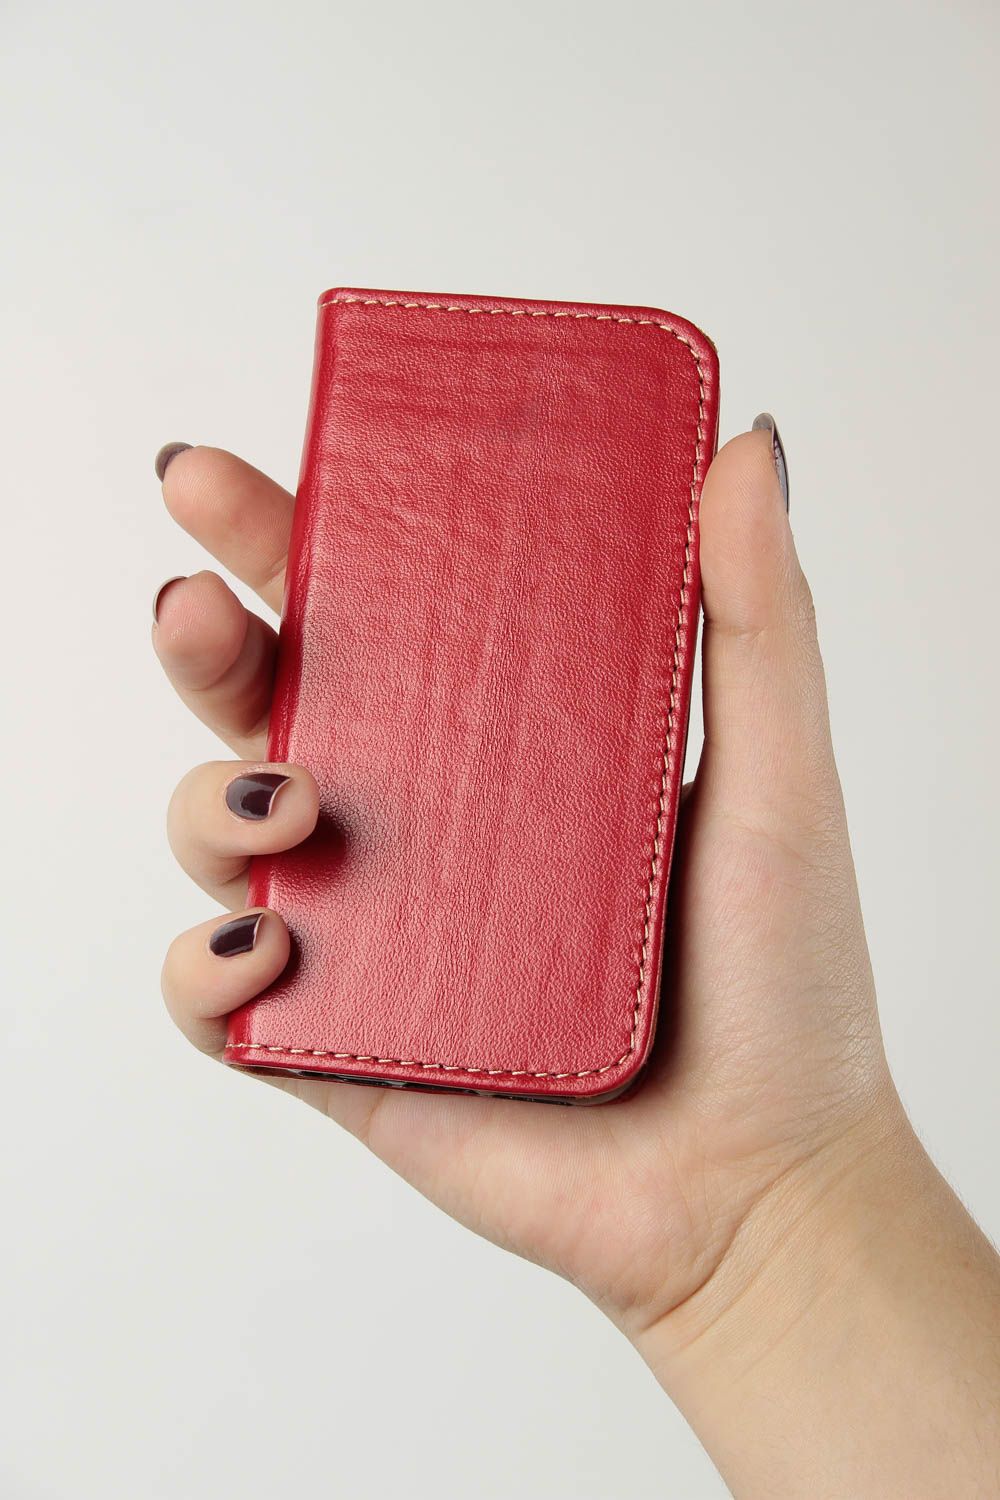 Чехол на телефон хэнд мэйд аксессуар для смартфона кожаный чехол красный фото 1